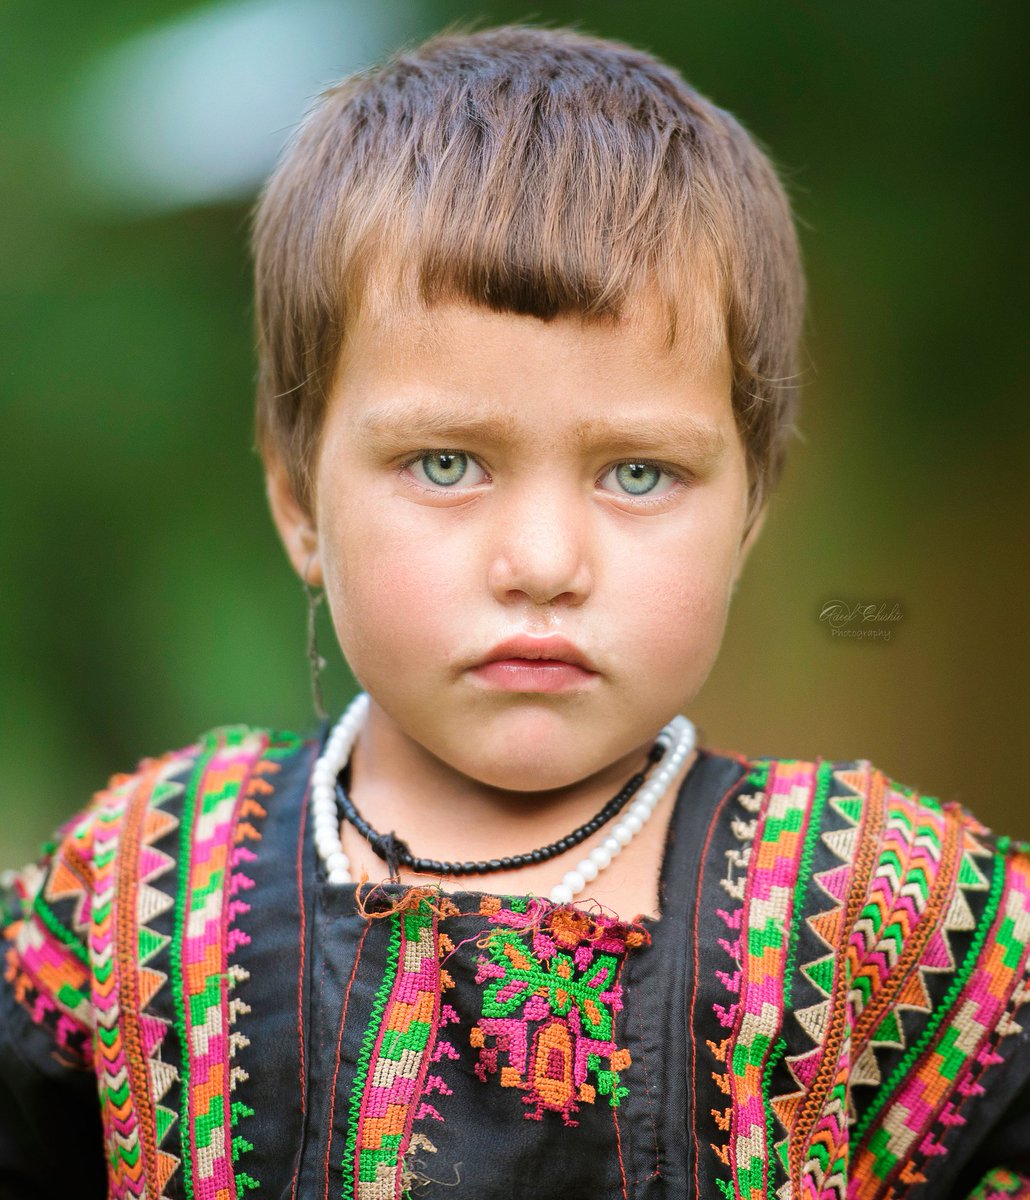 Таджик с глазом